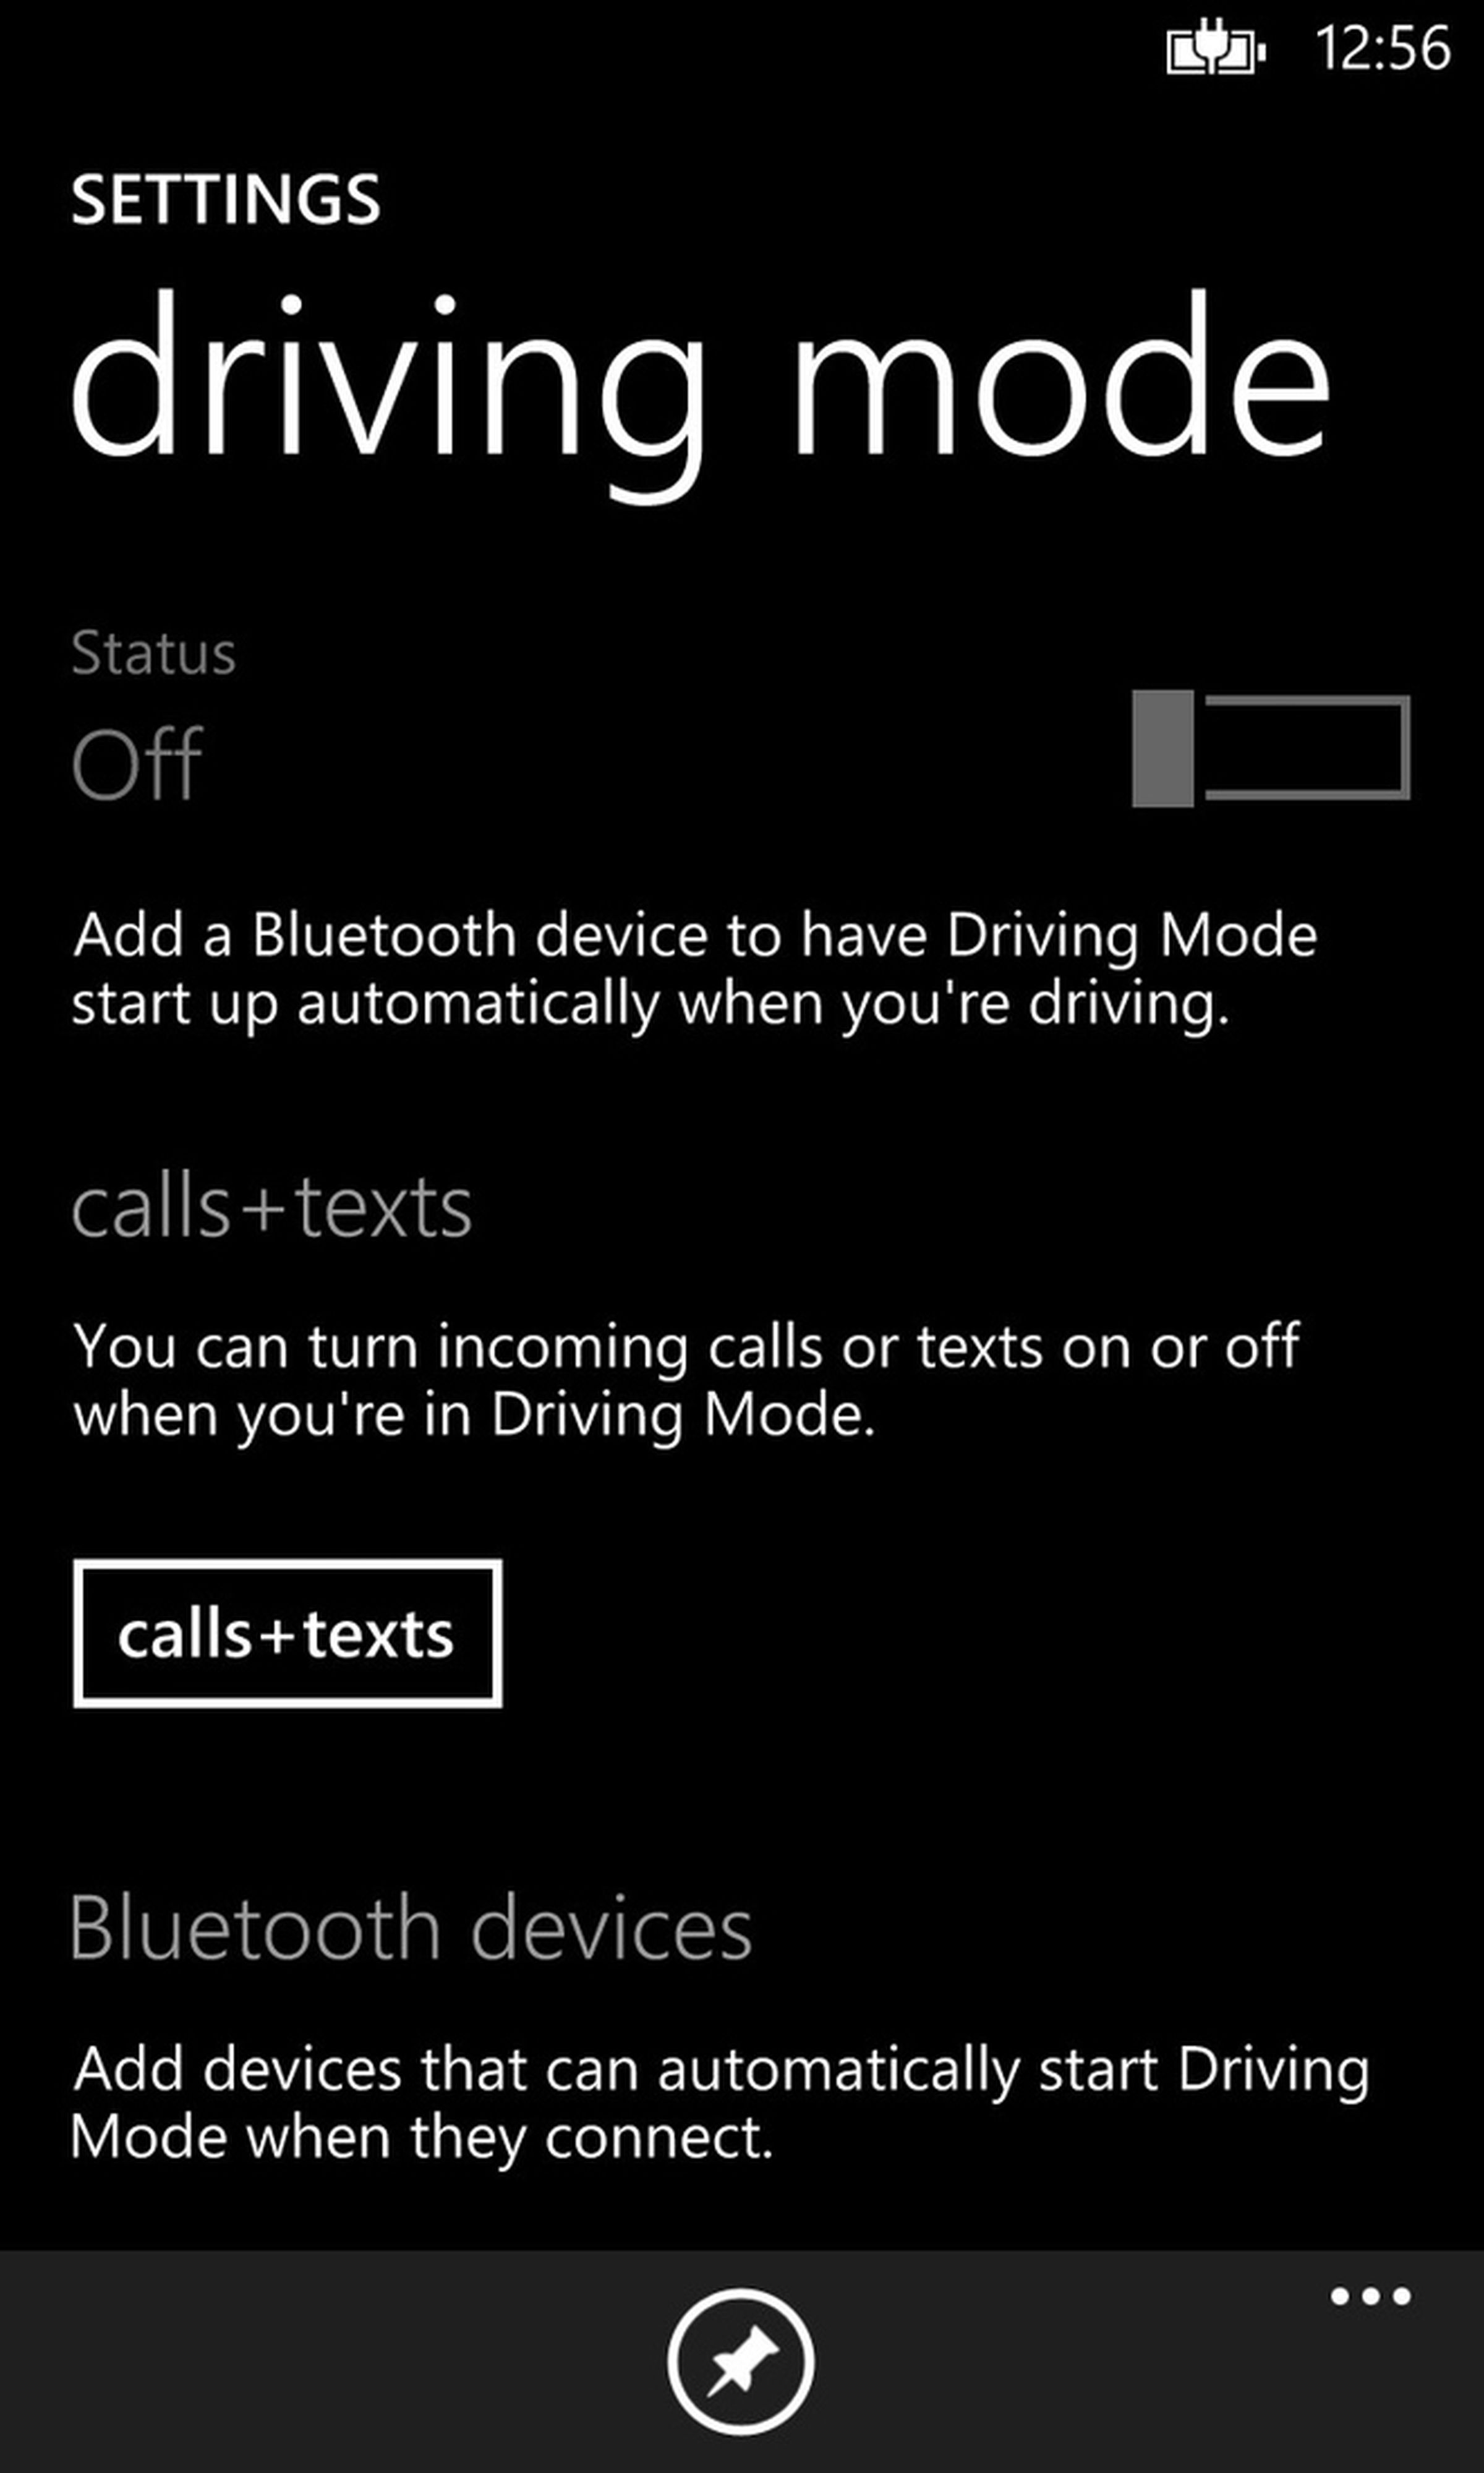 Windows Phone 8 Update 3 screenshots